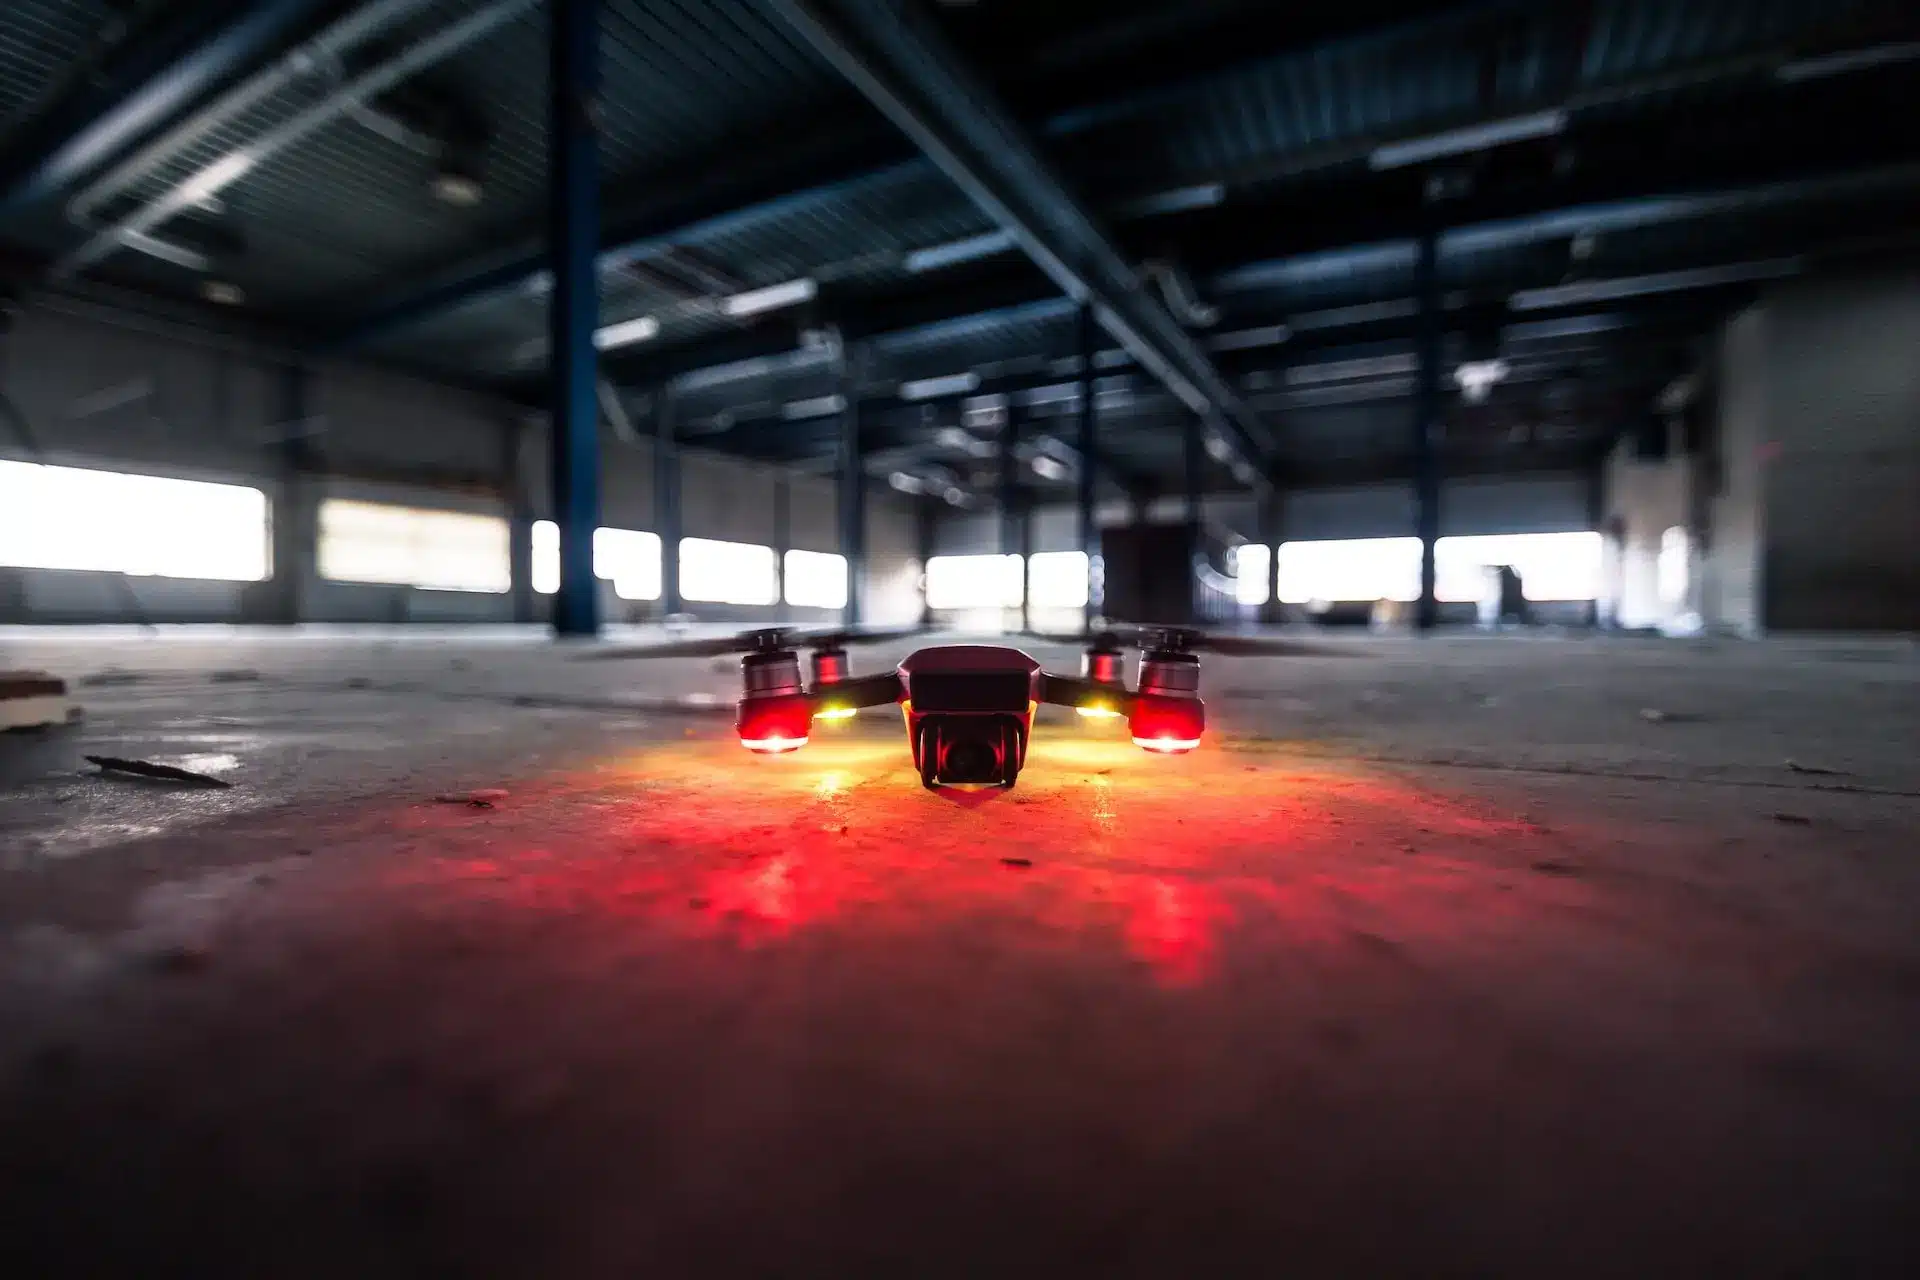 futuristisch aussehende Drohne mit LEDs am Boden